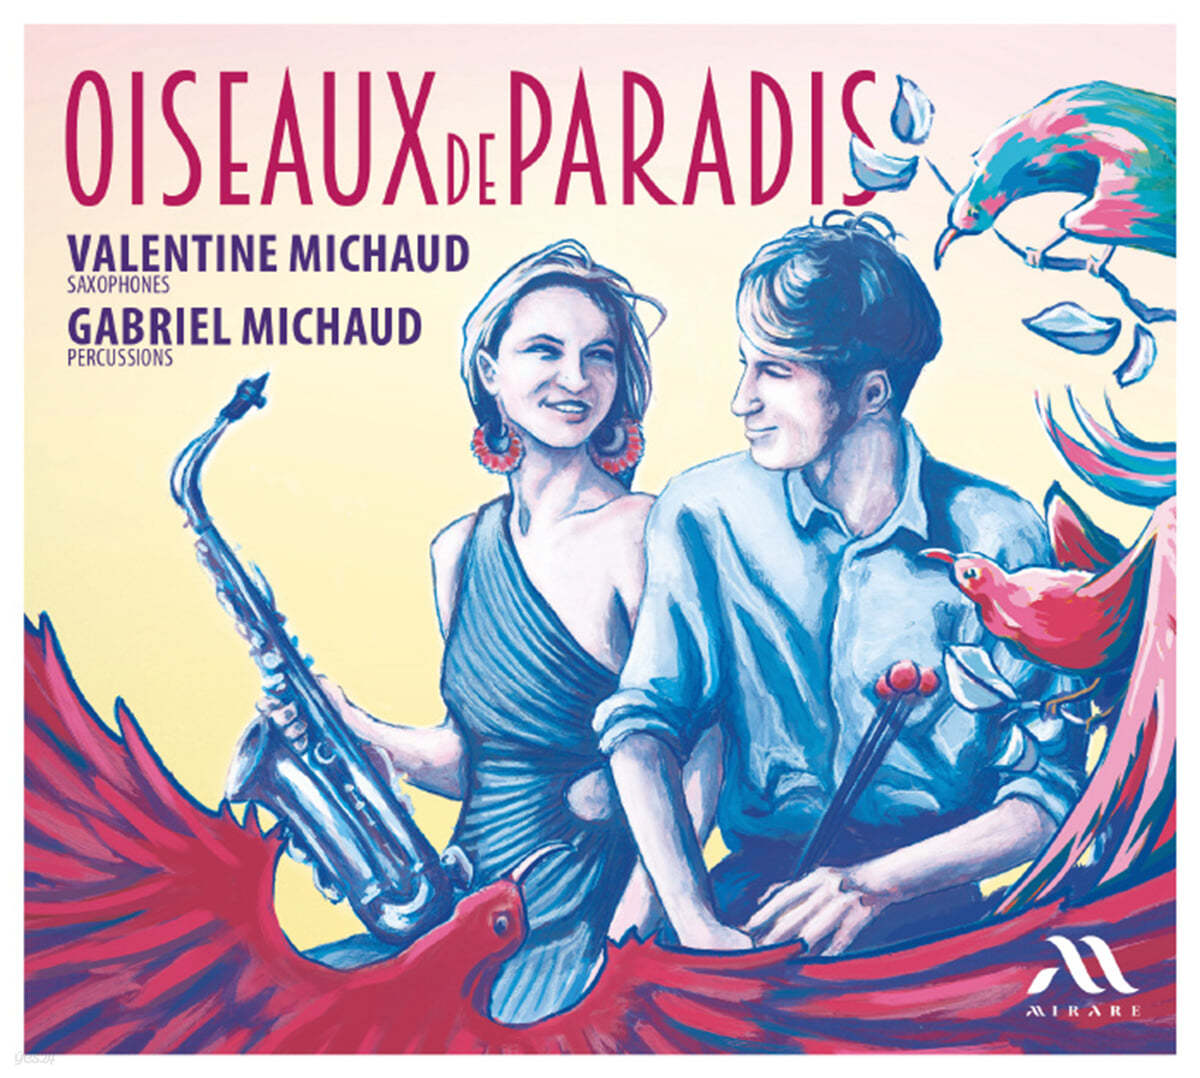 Gabriel / Valentine Michaud 색소폰과 퍼쿠션 이중주 (Oiseaux De Paradis)